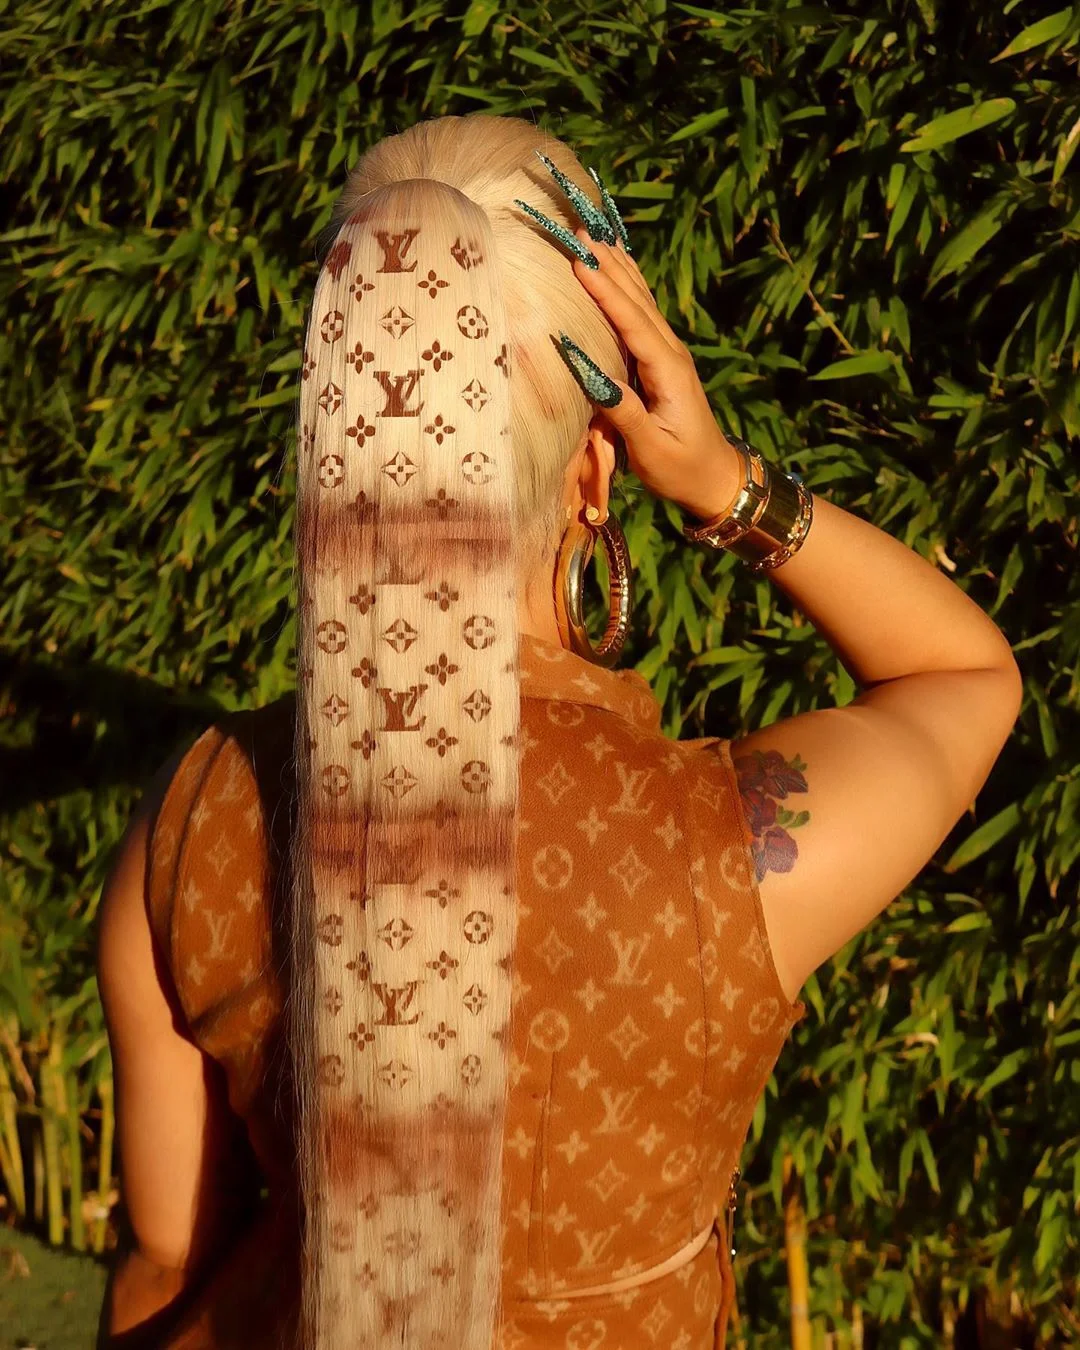 Епатажна Карді Бі пофарбувала волосся в принт Louis Vuitton - фото 486625